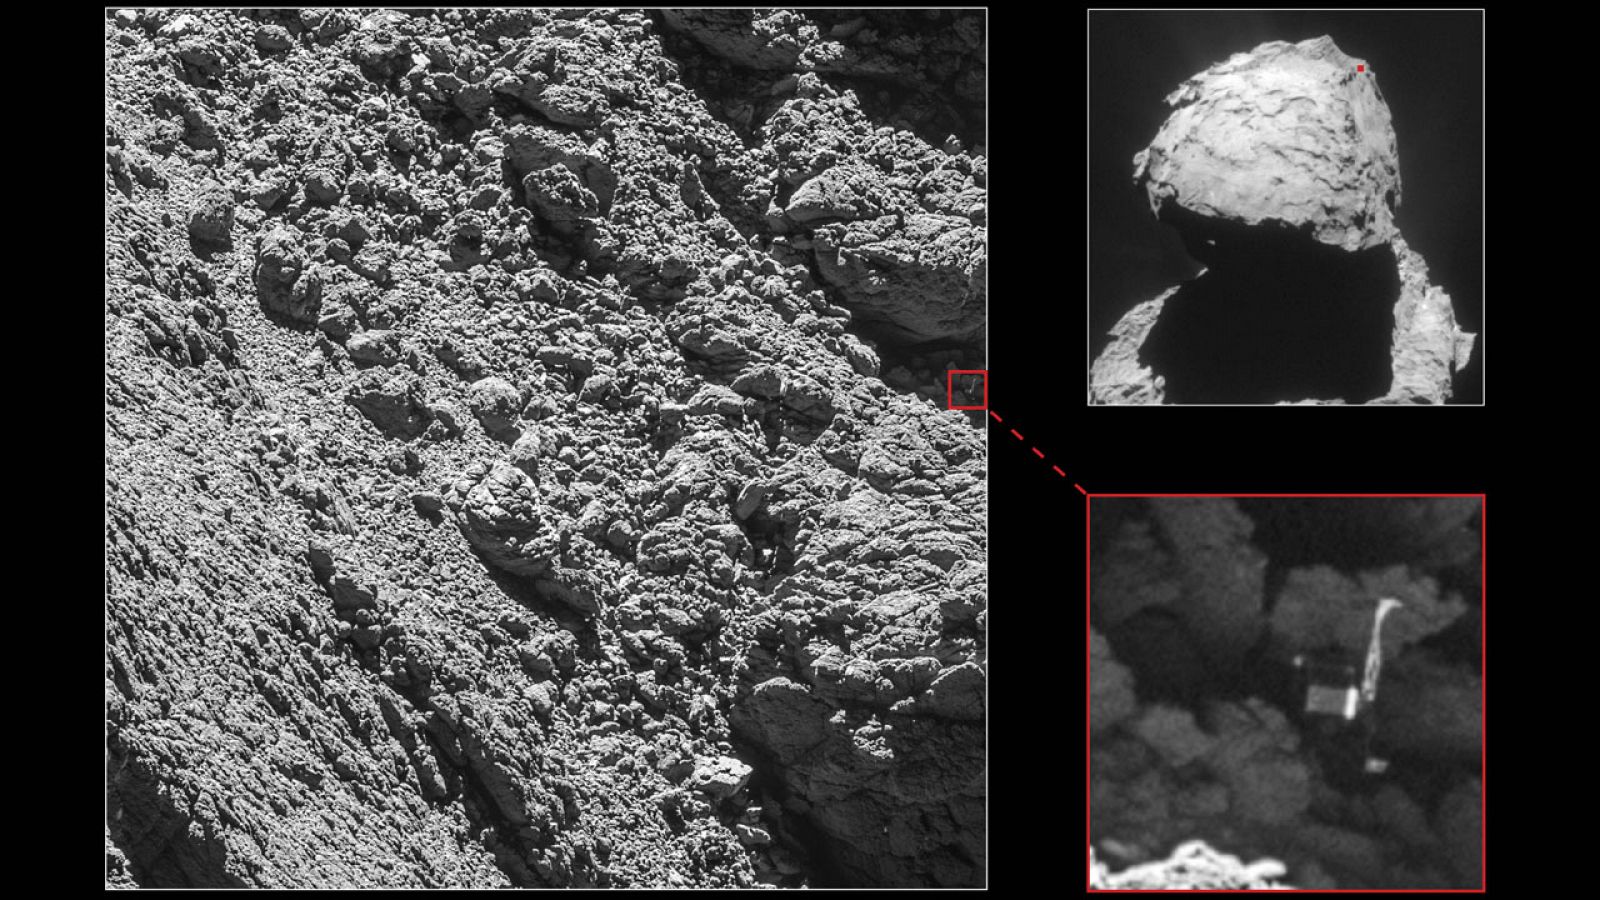 La sonda ha localizado el módulo Philae en una grieta del cometa